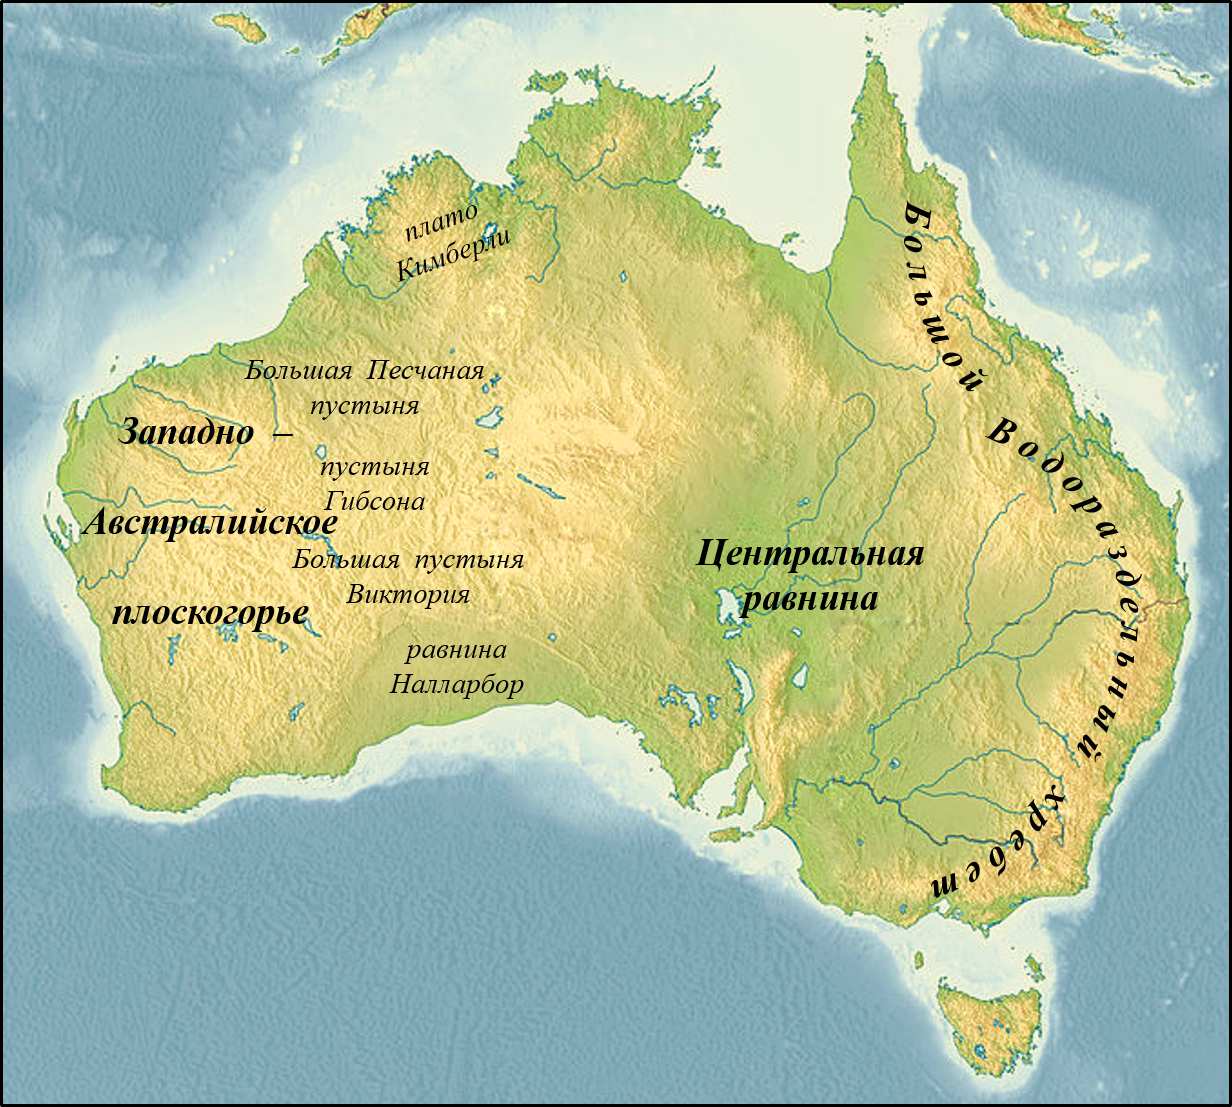 Большой Водораздельный хребет в Австралии на карте. Центральная низменность Австралии на карте Австралии. Формы рельефа Австралии на карте. Названия крупных форм рельефа Австралии.